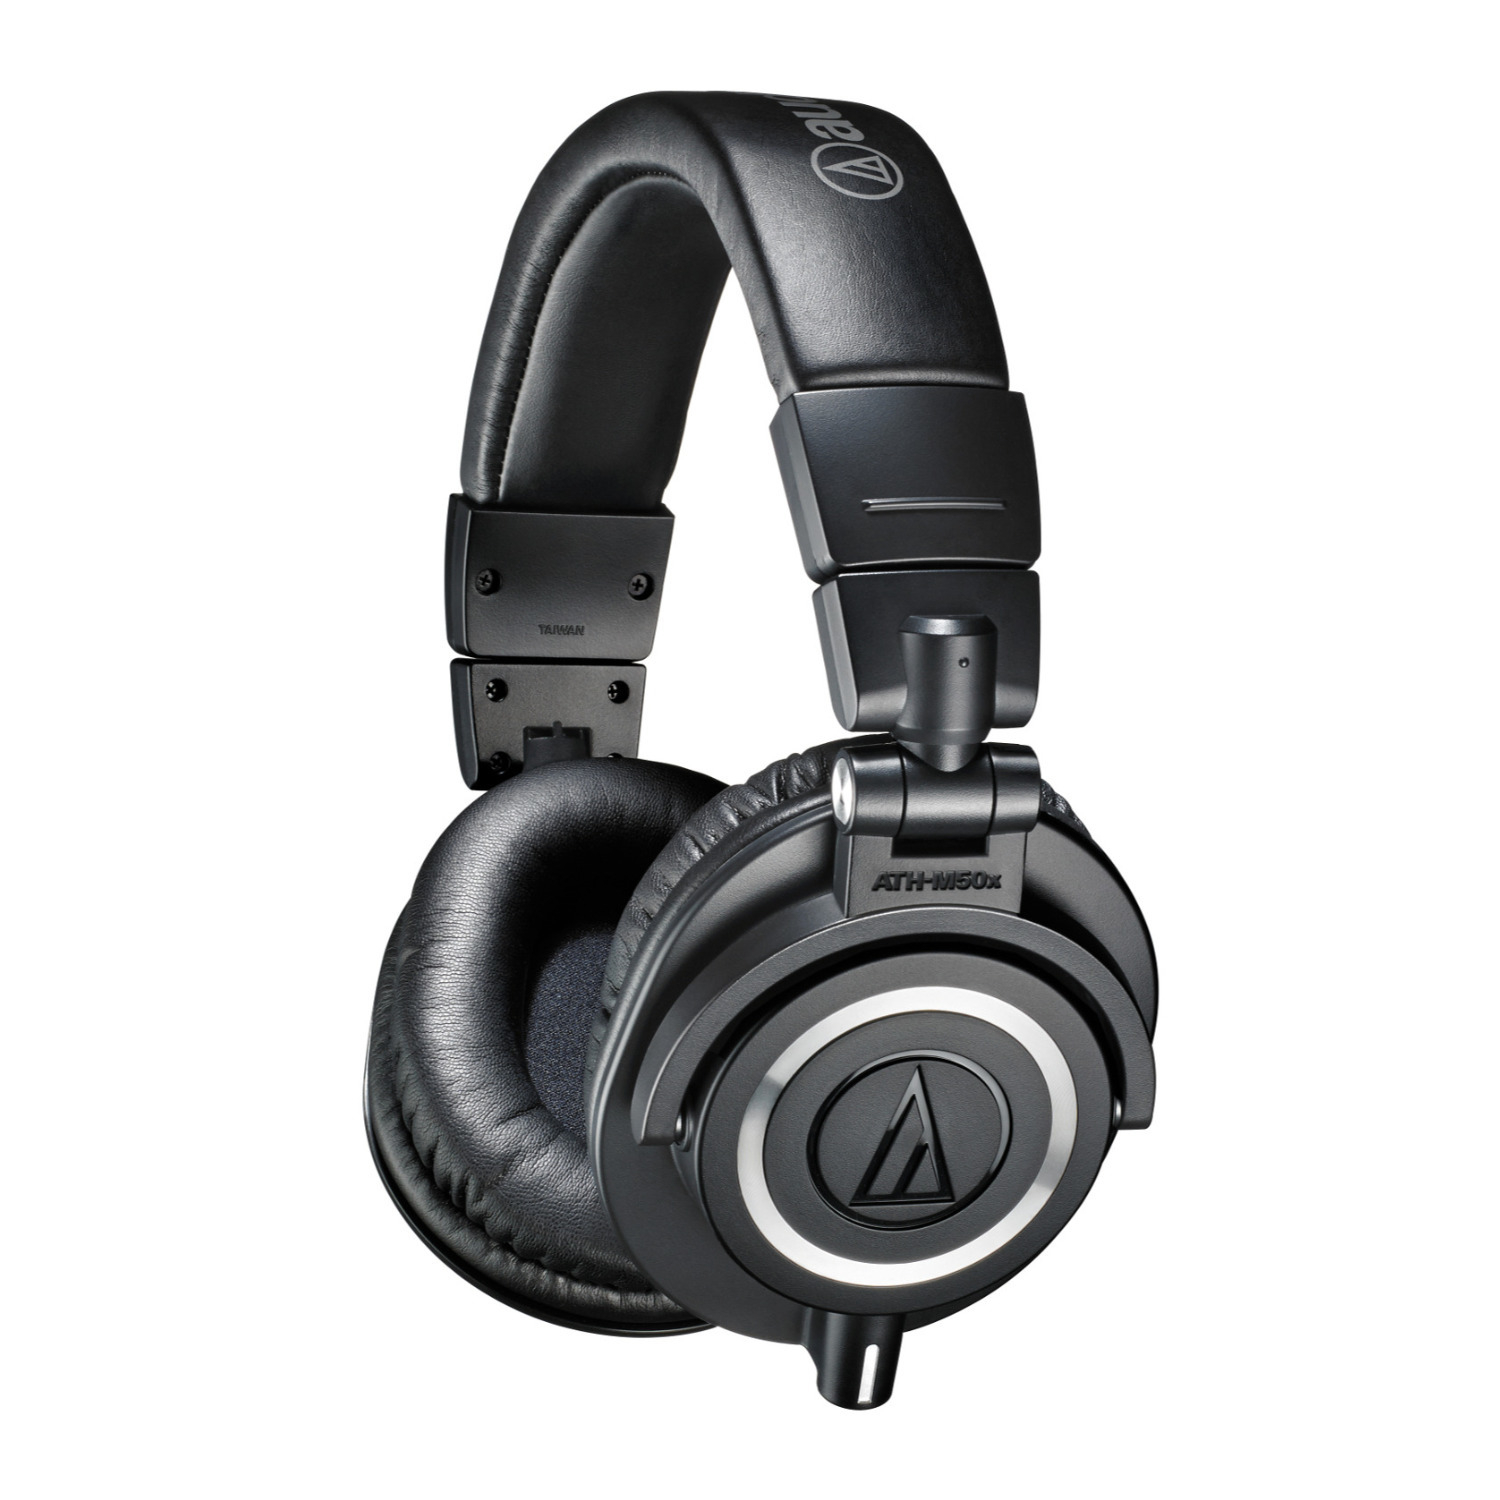 M-Series  Professional Studio Monitor Headphones in Black - Audio-Technica ATH-M50x